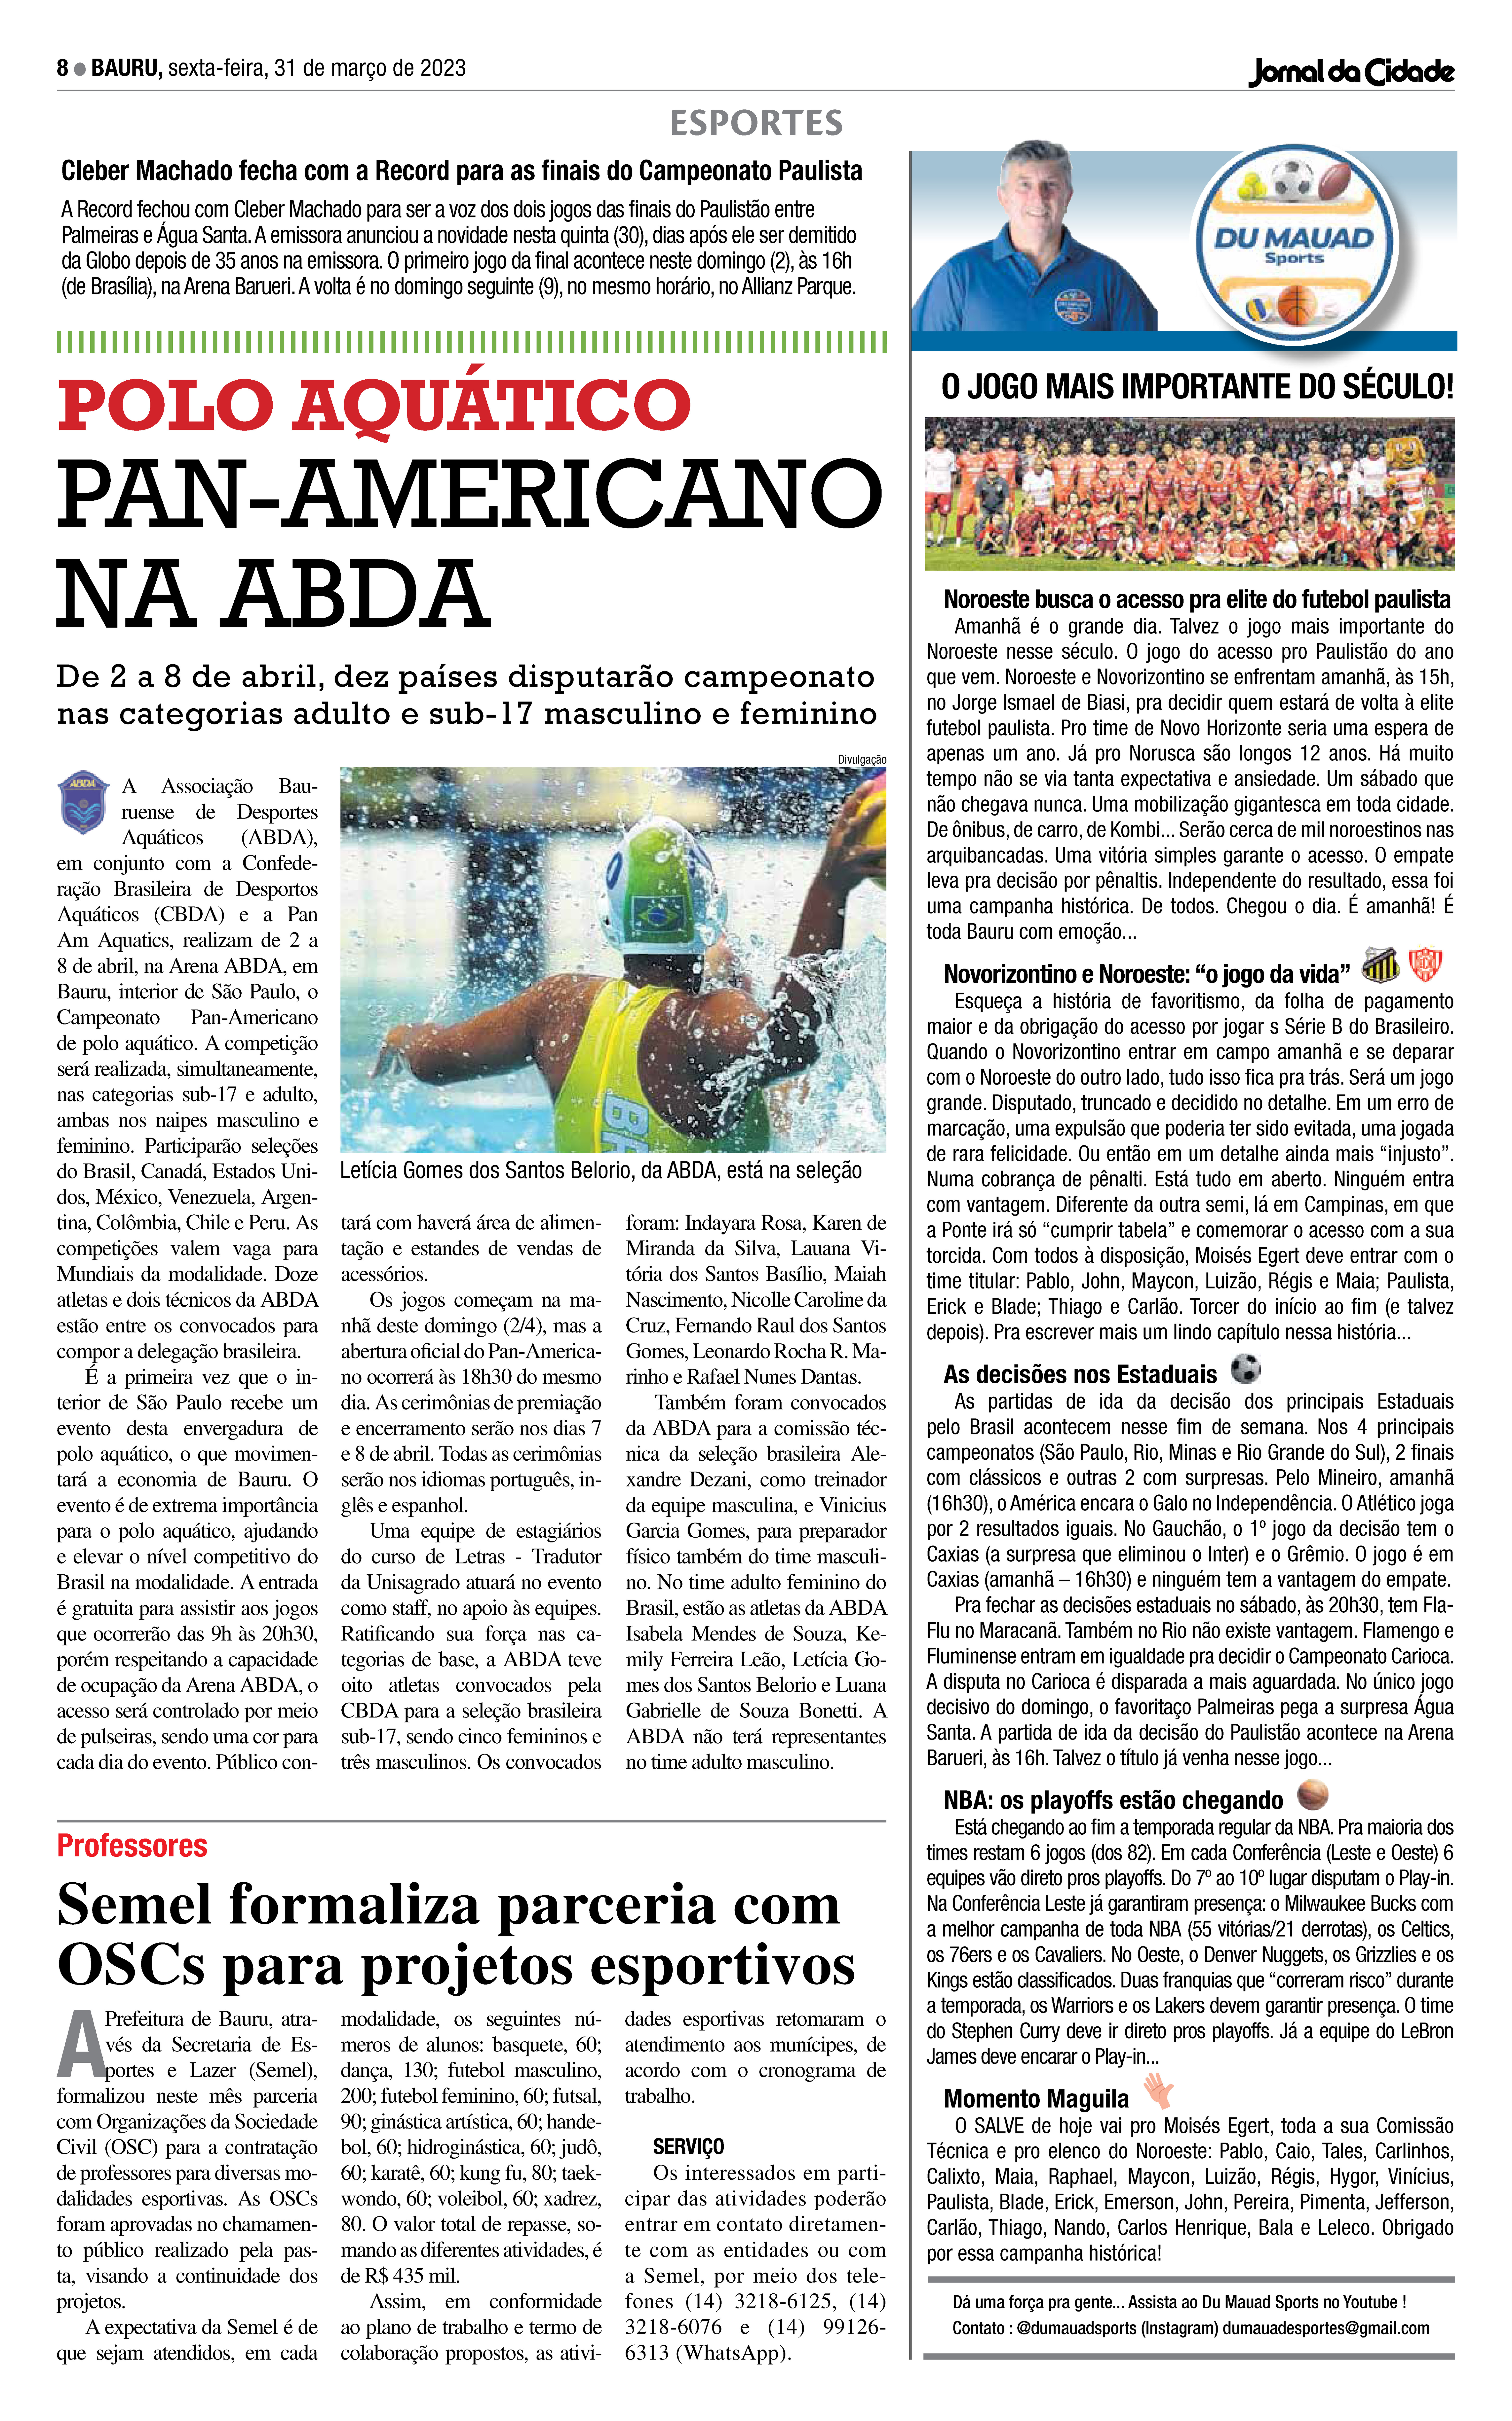 Aluna da Unifor é o Brasil no Panamericano de Xadrez Universitário, Ensinando e Aprendendo